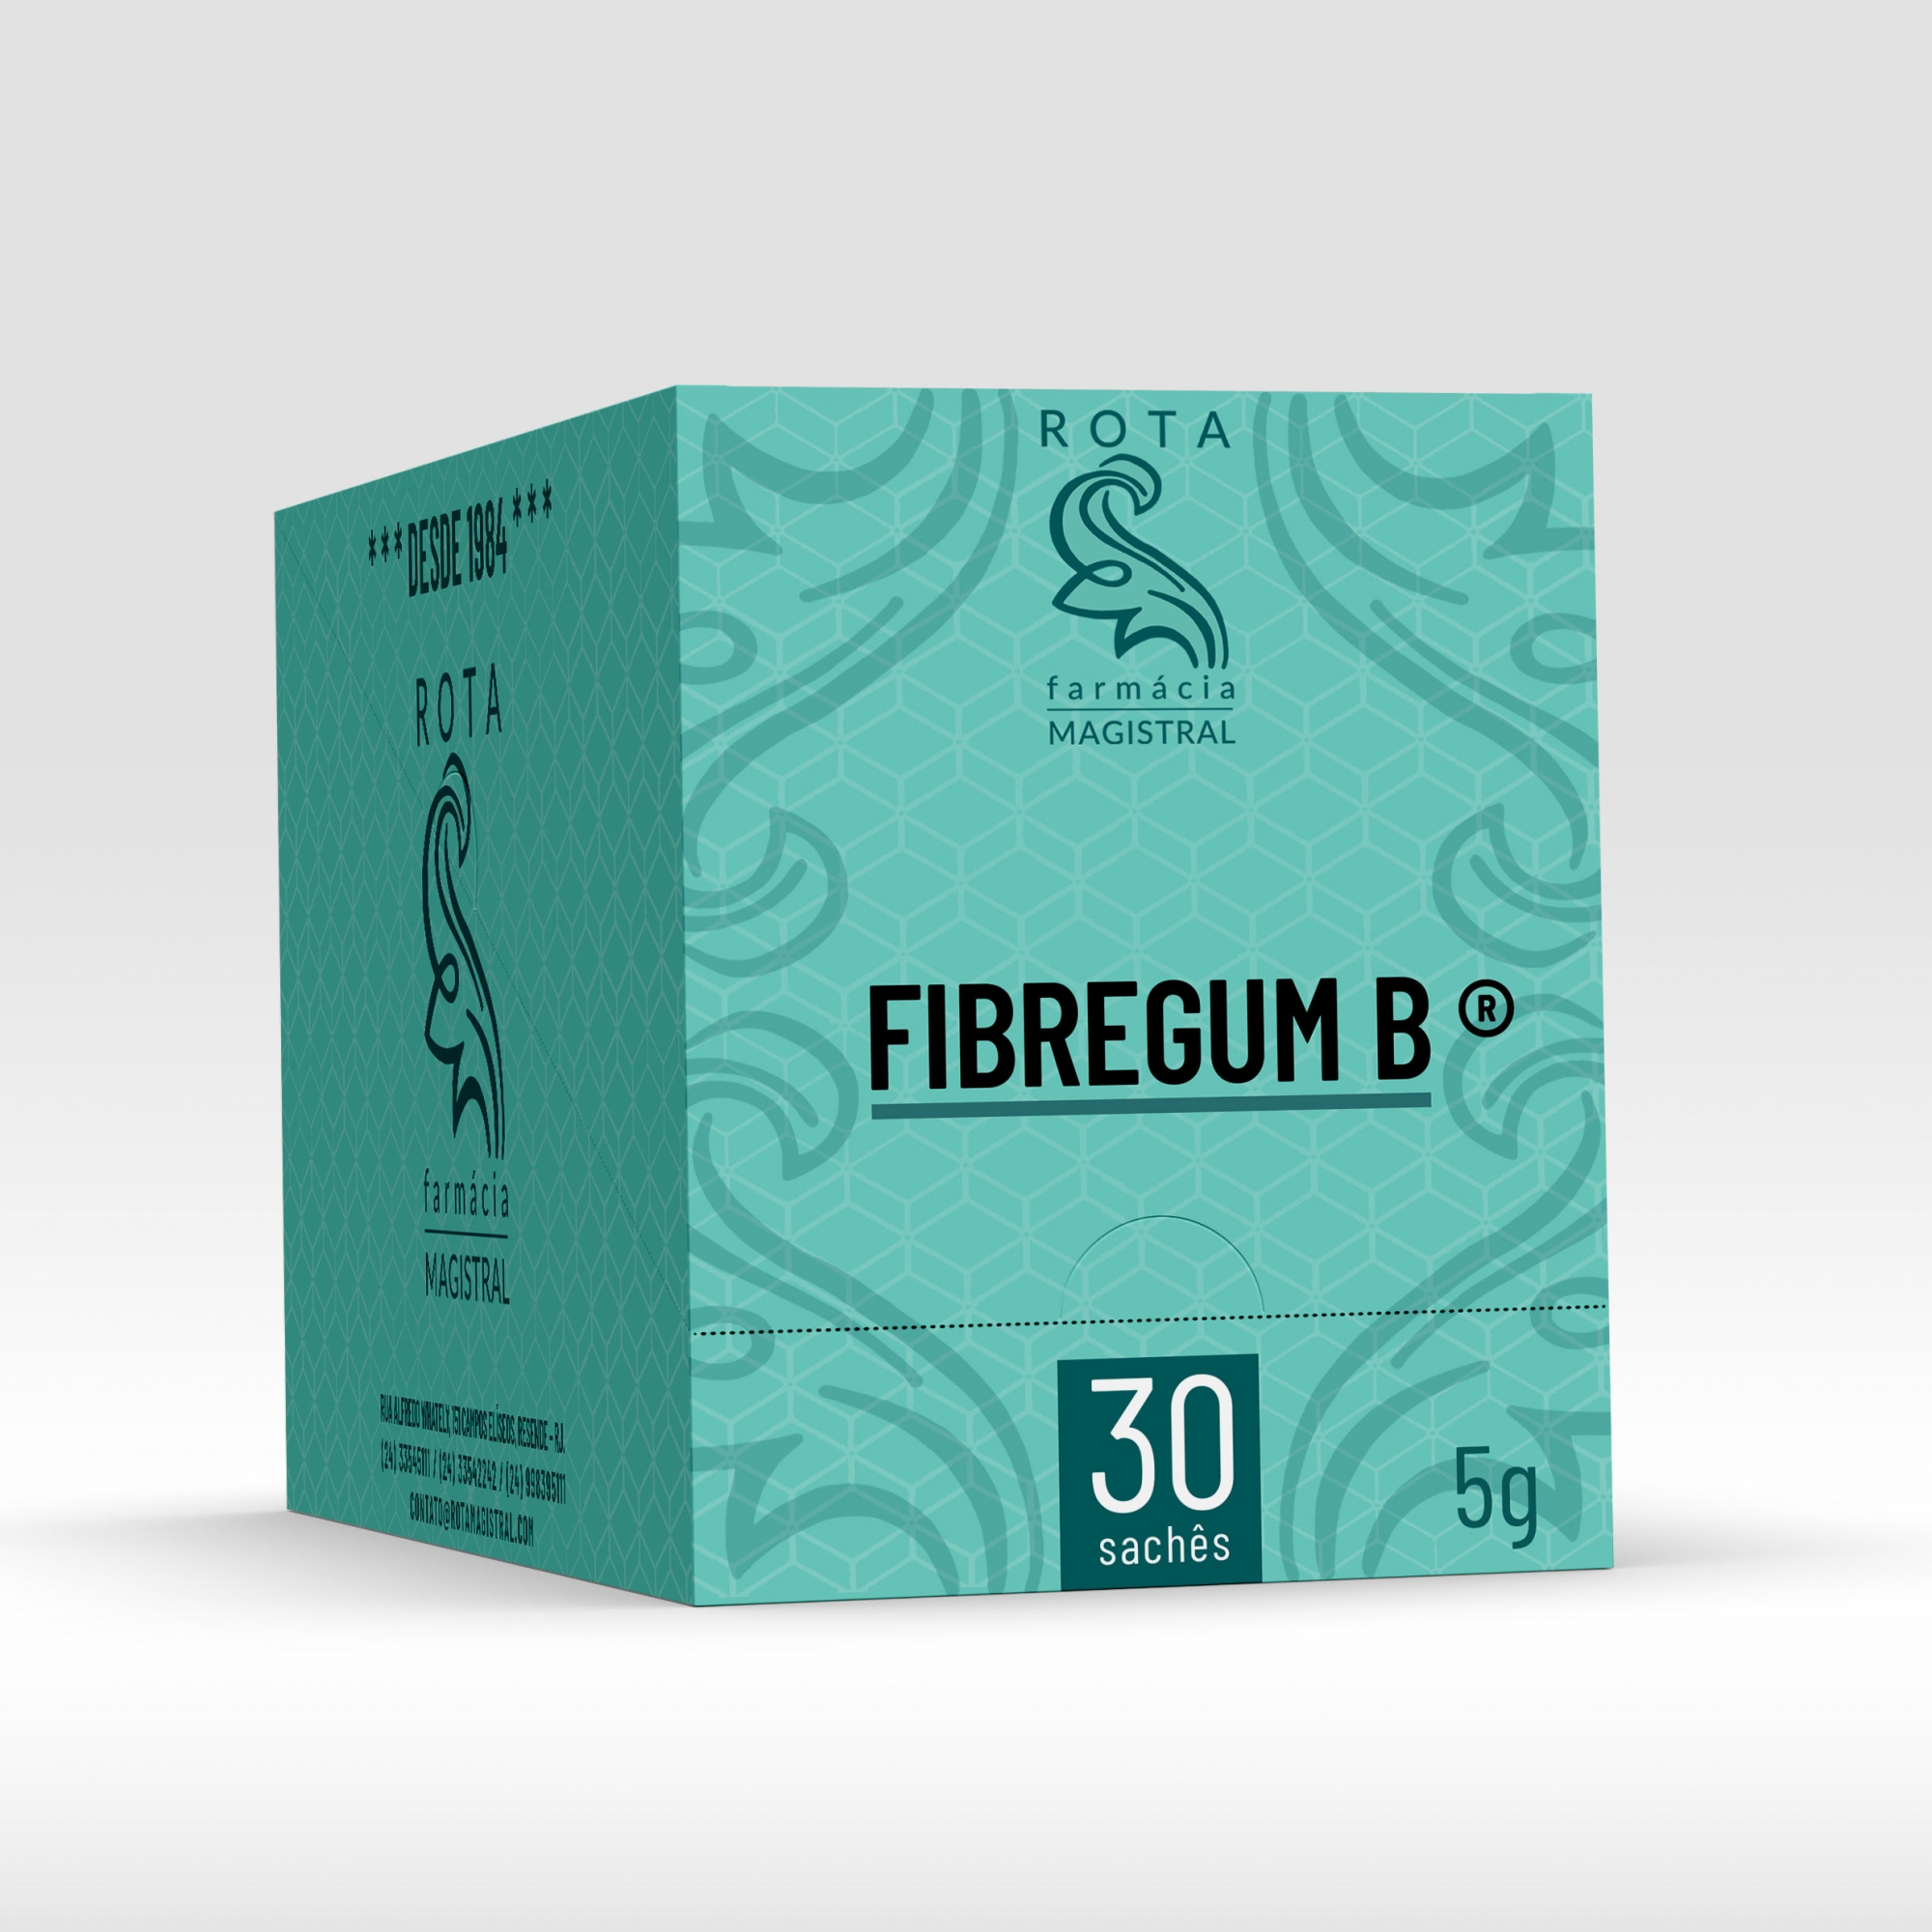 Fibregum B ® 5g 30 sachês